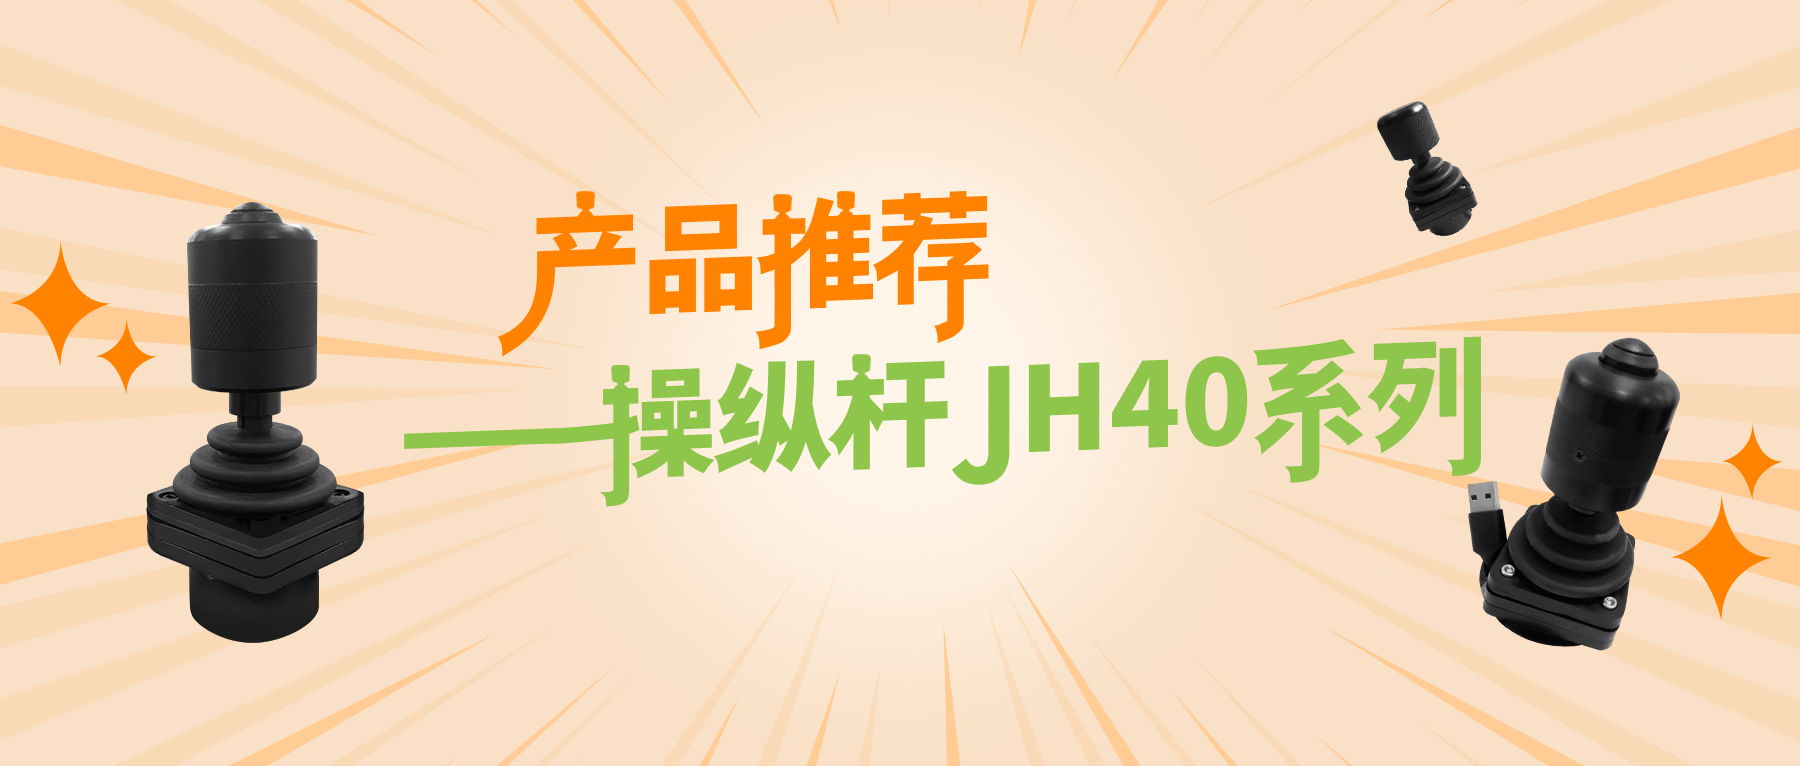 产品推荐——操纵杆JH40系列